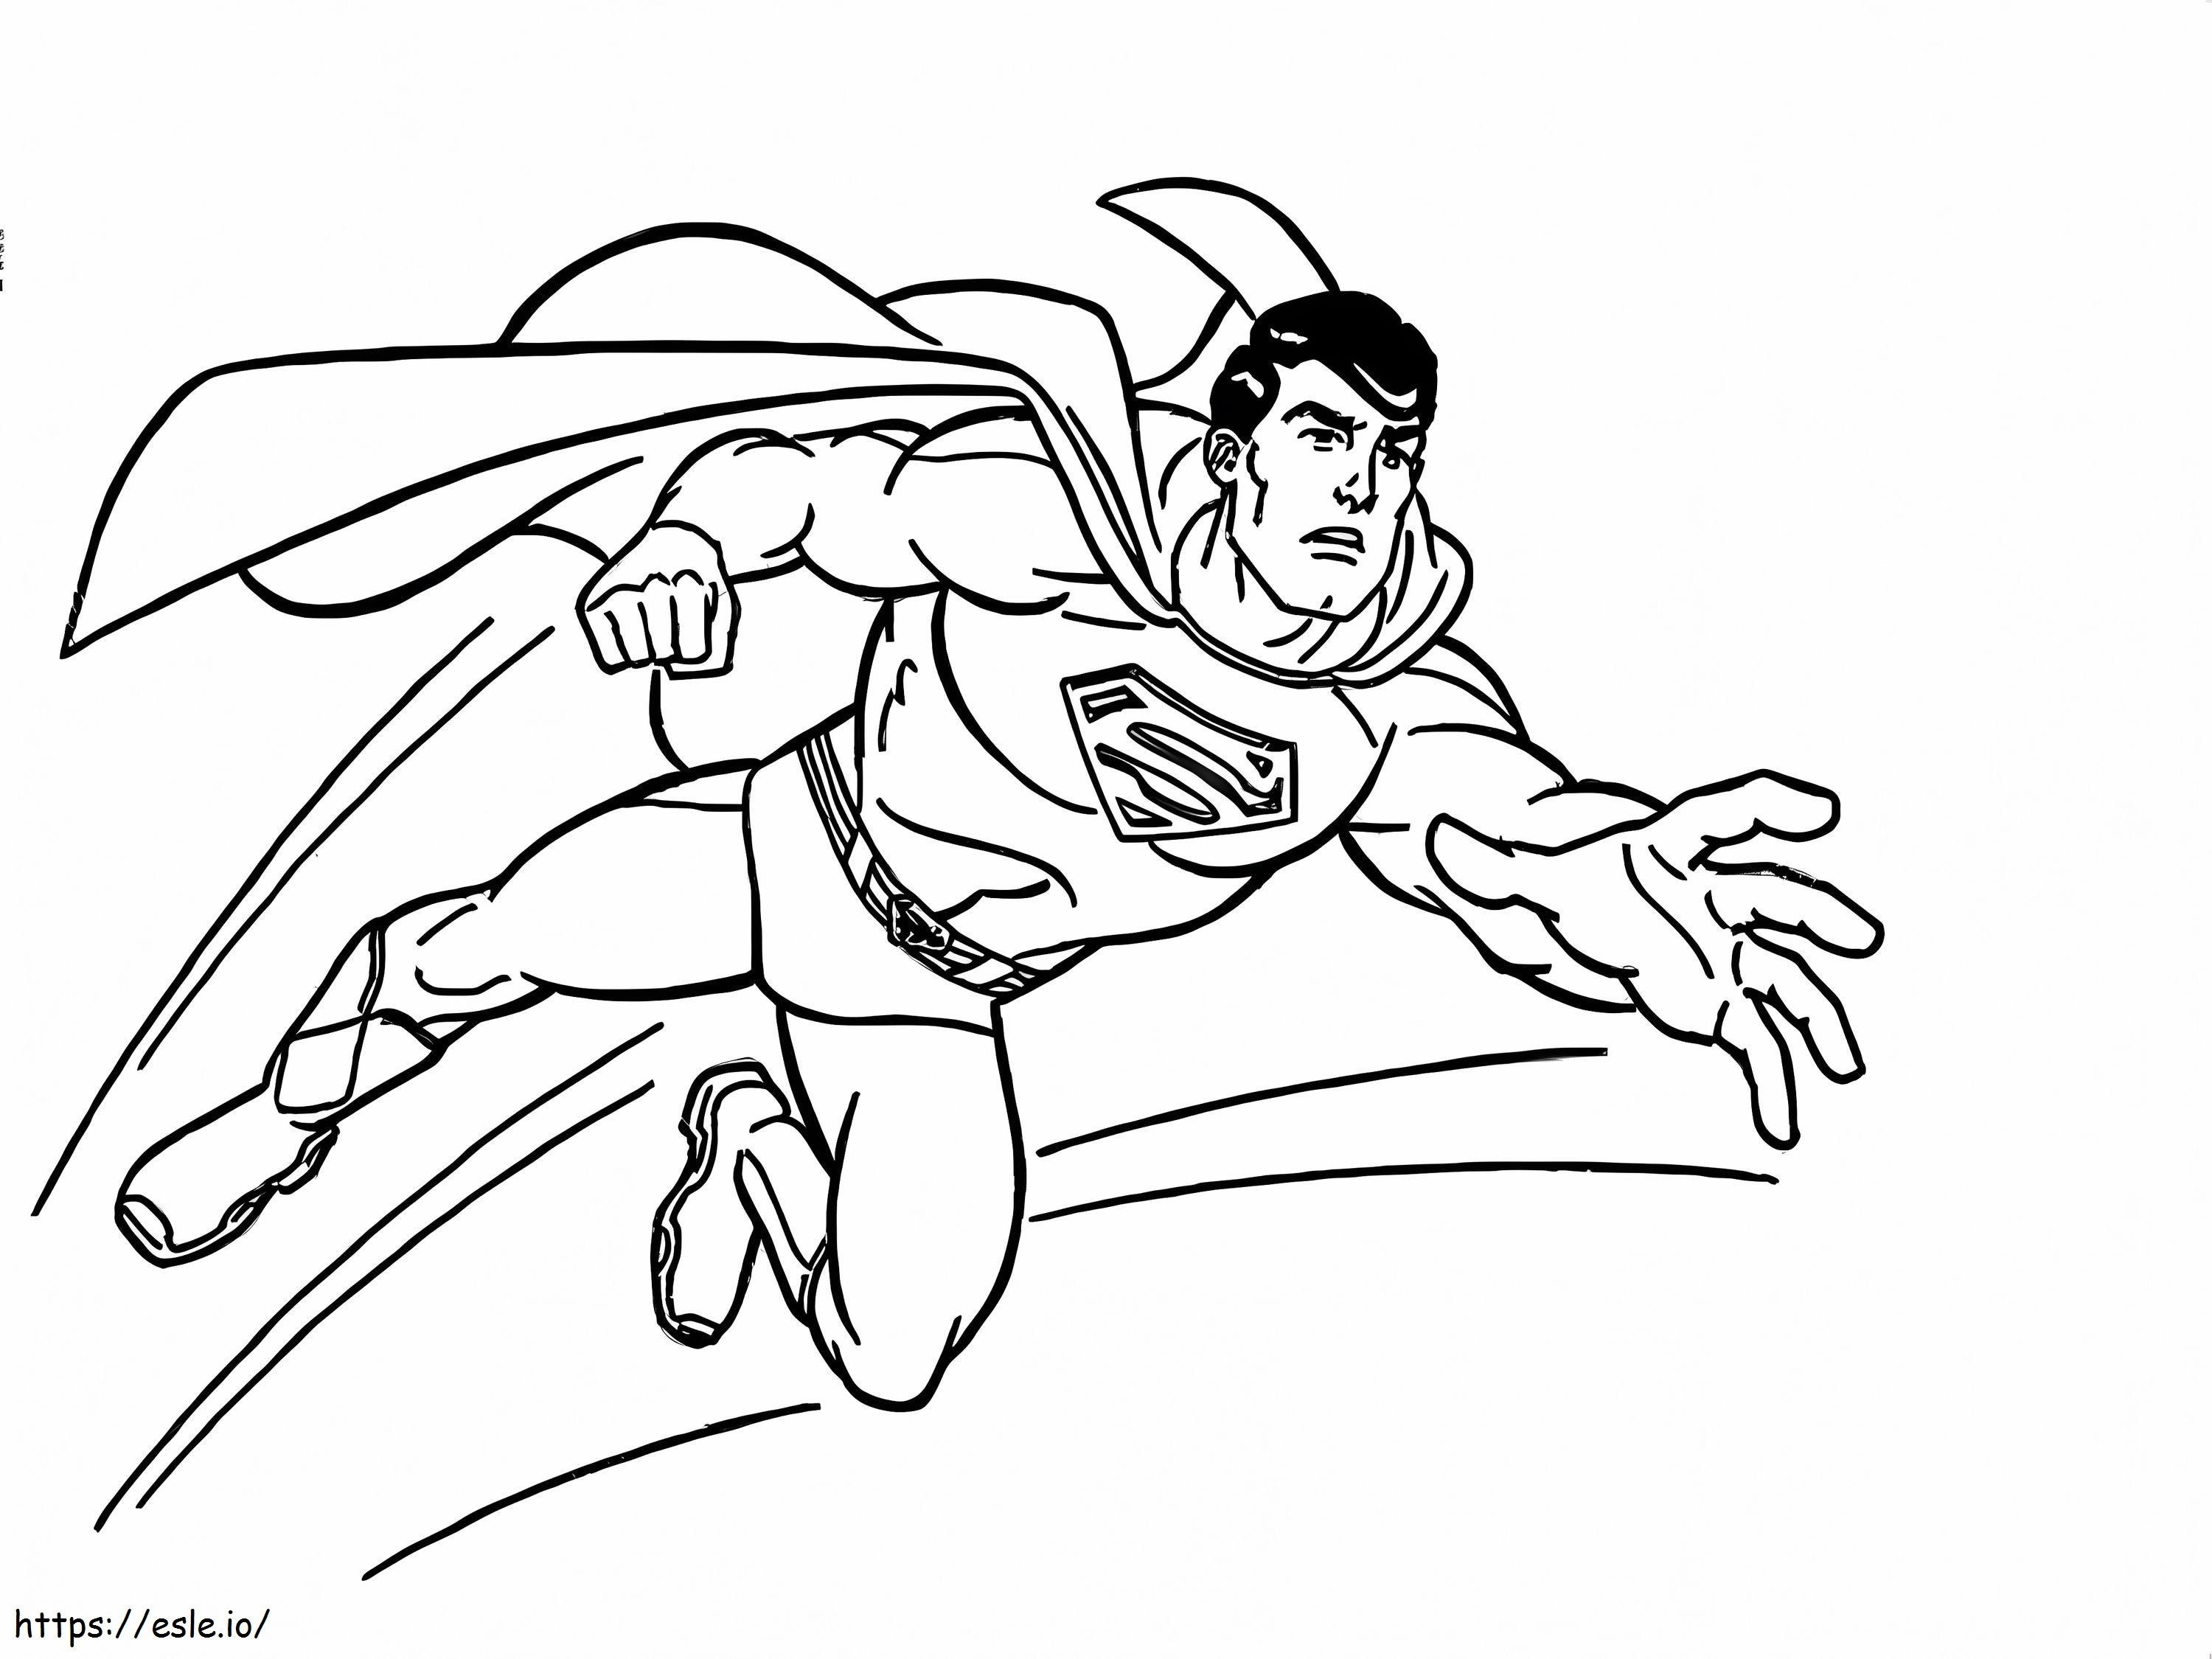 Seria Supermana kolorowanka